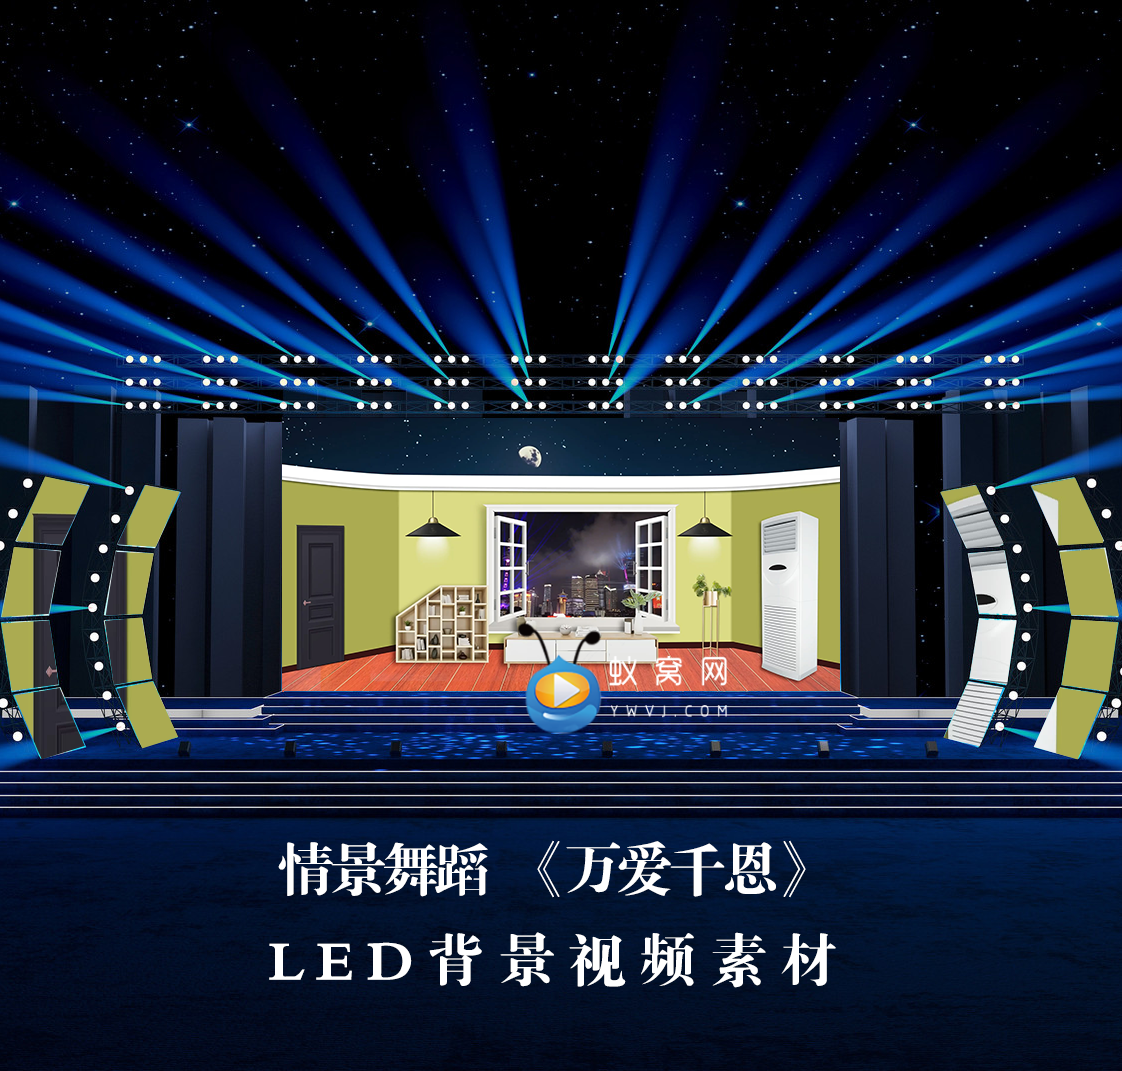 S3463 情景舞蹈 万爱千恩 (伴奏) LED节目大屏舞美背景视频素材